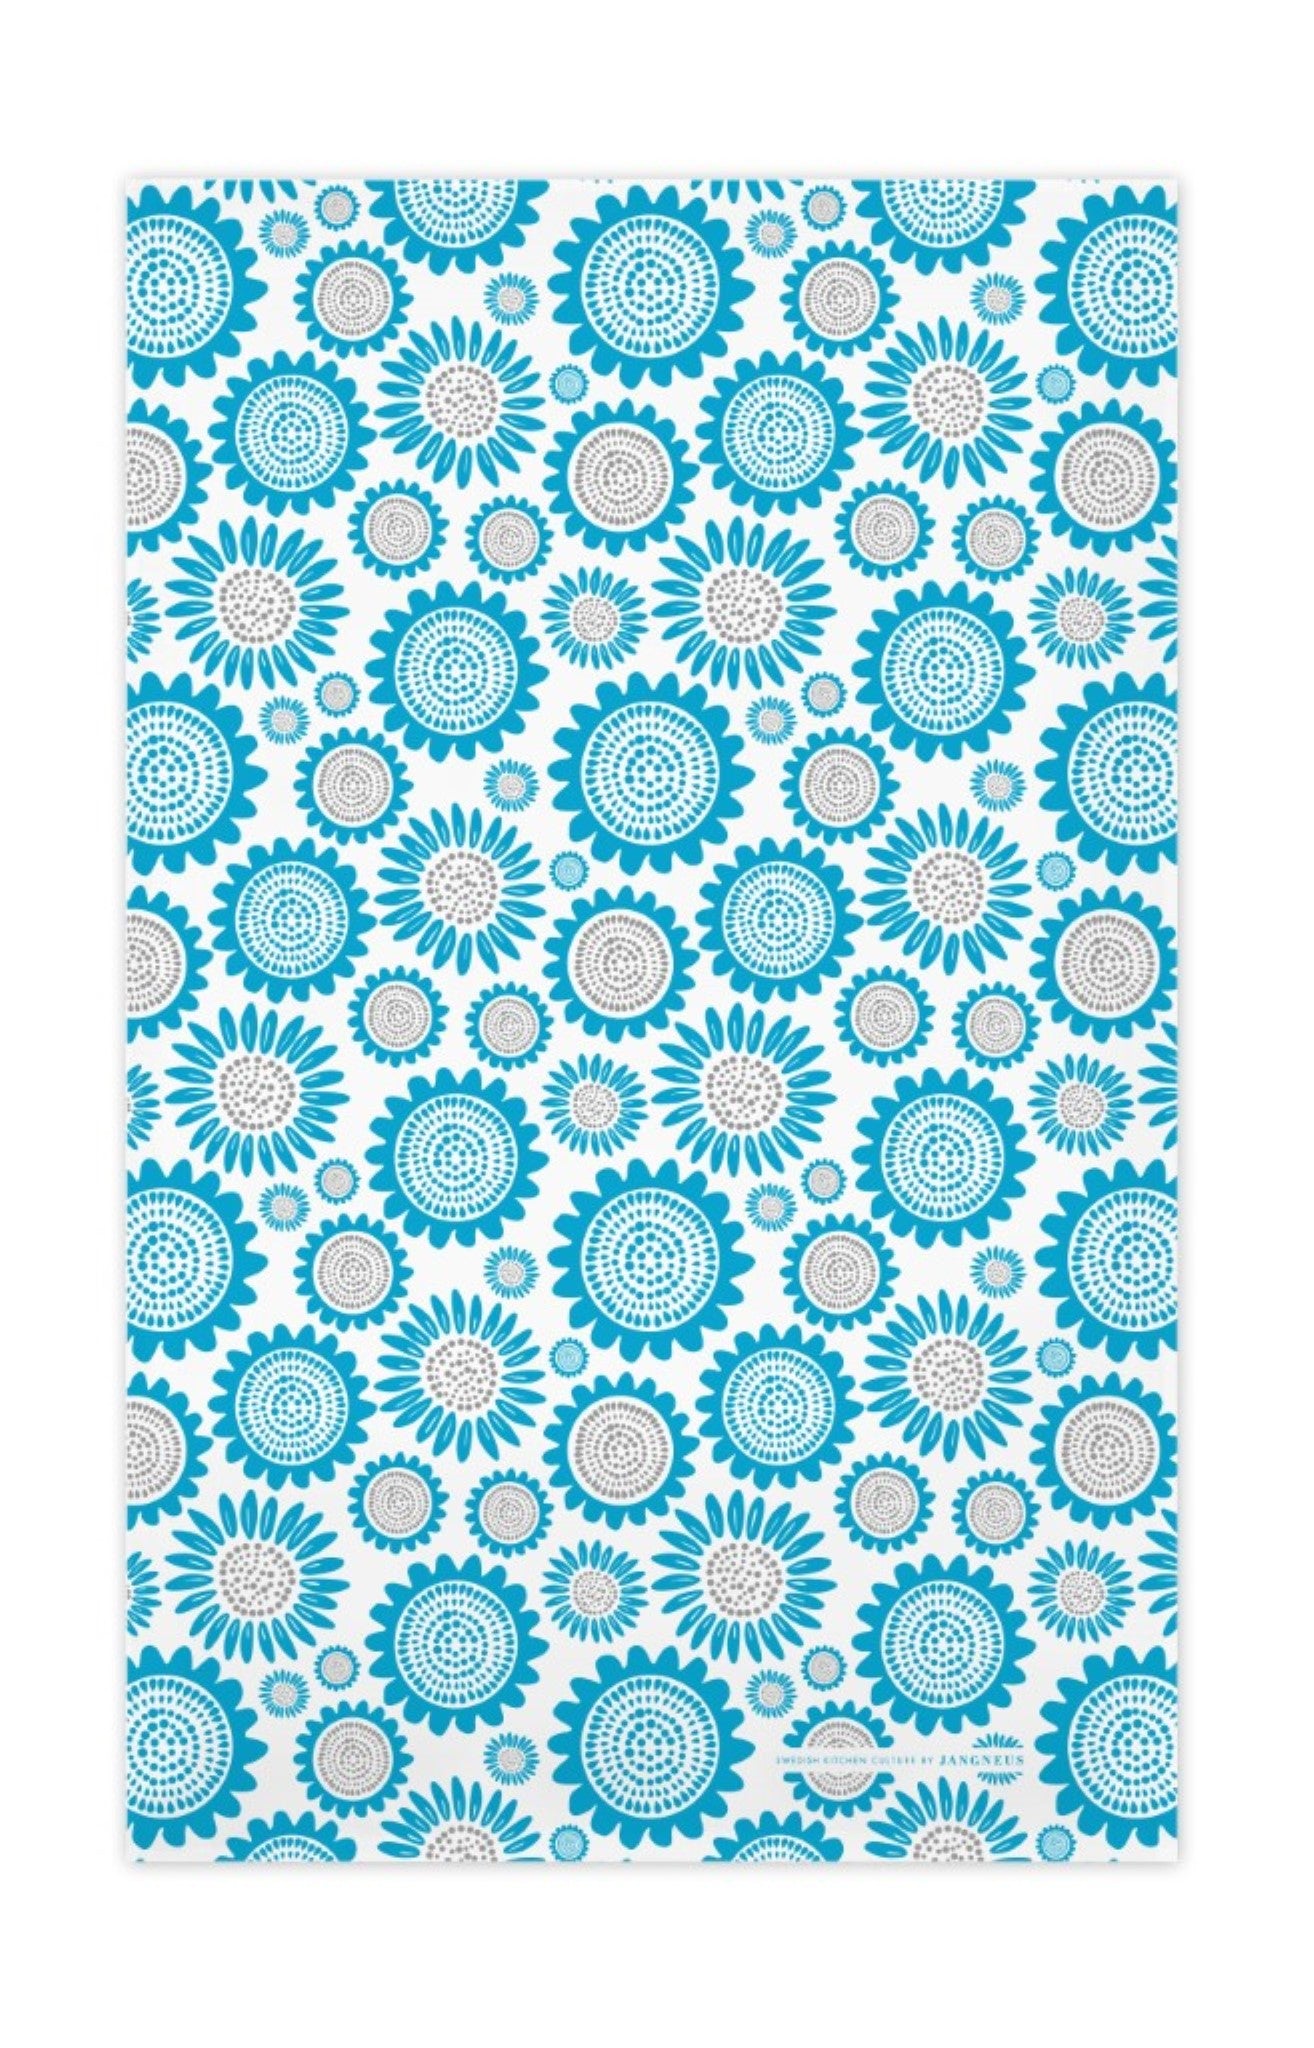 Sunflower Tea Towel - Turquoise